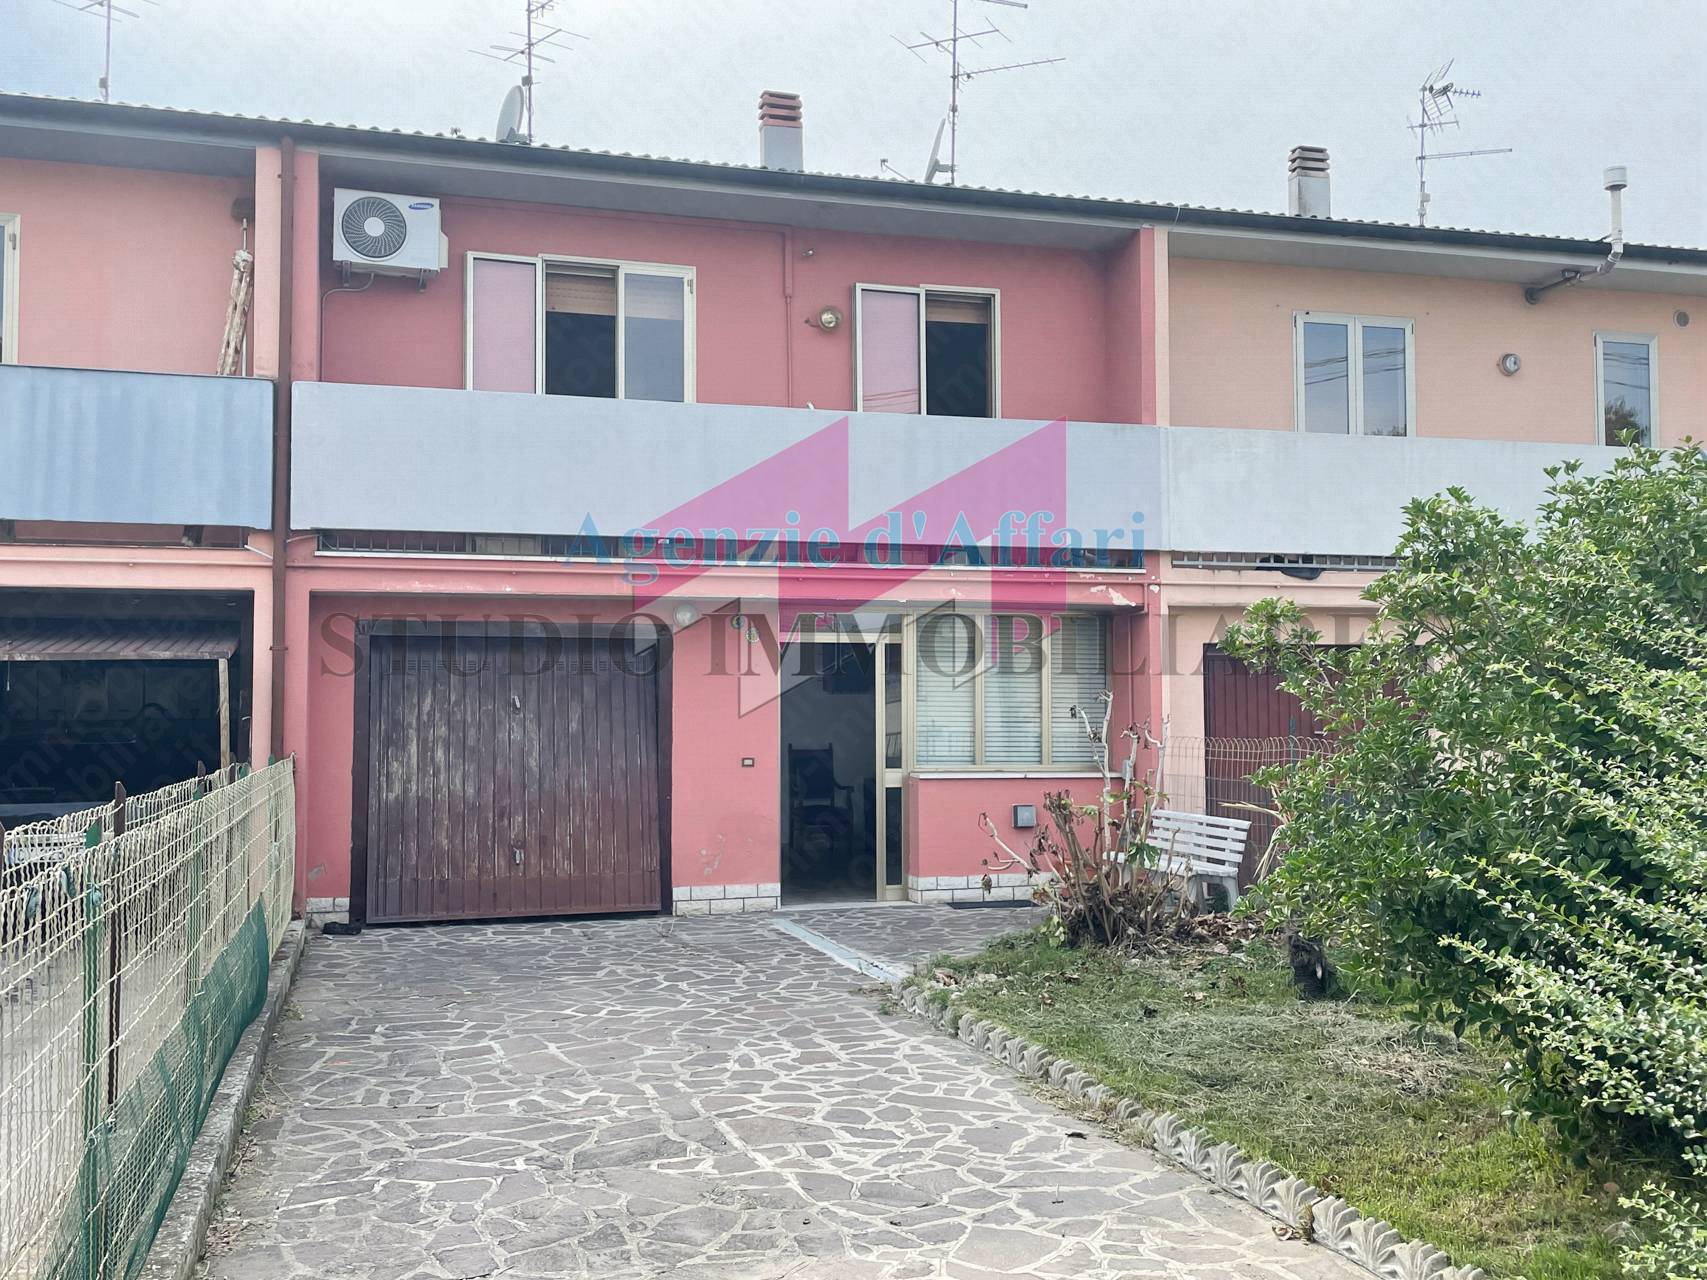 Villa a Schiera in vendita a Poggio Rusco, 6 locali, prezzo € 27.000 | PortaleAgenzieImmobiliari.it